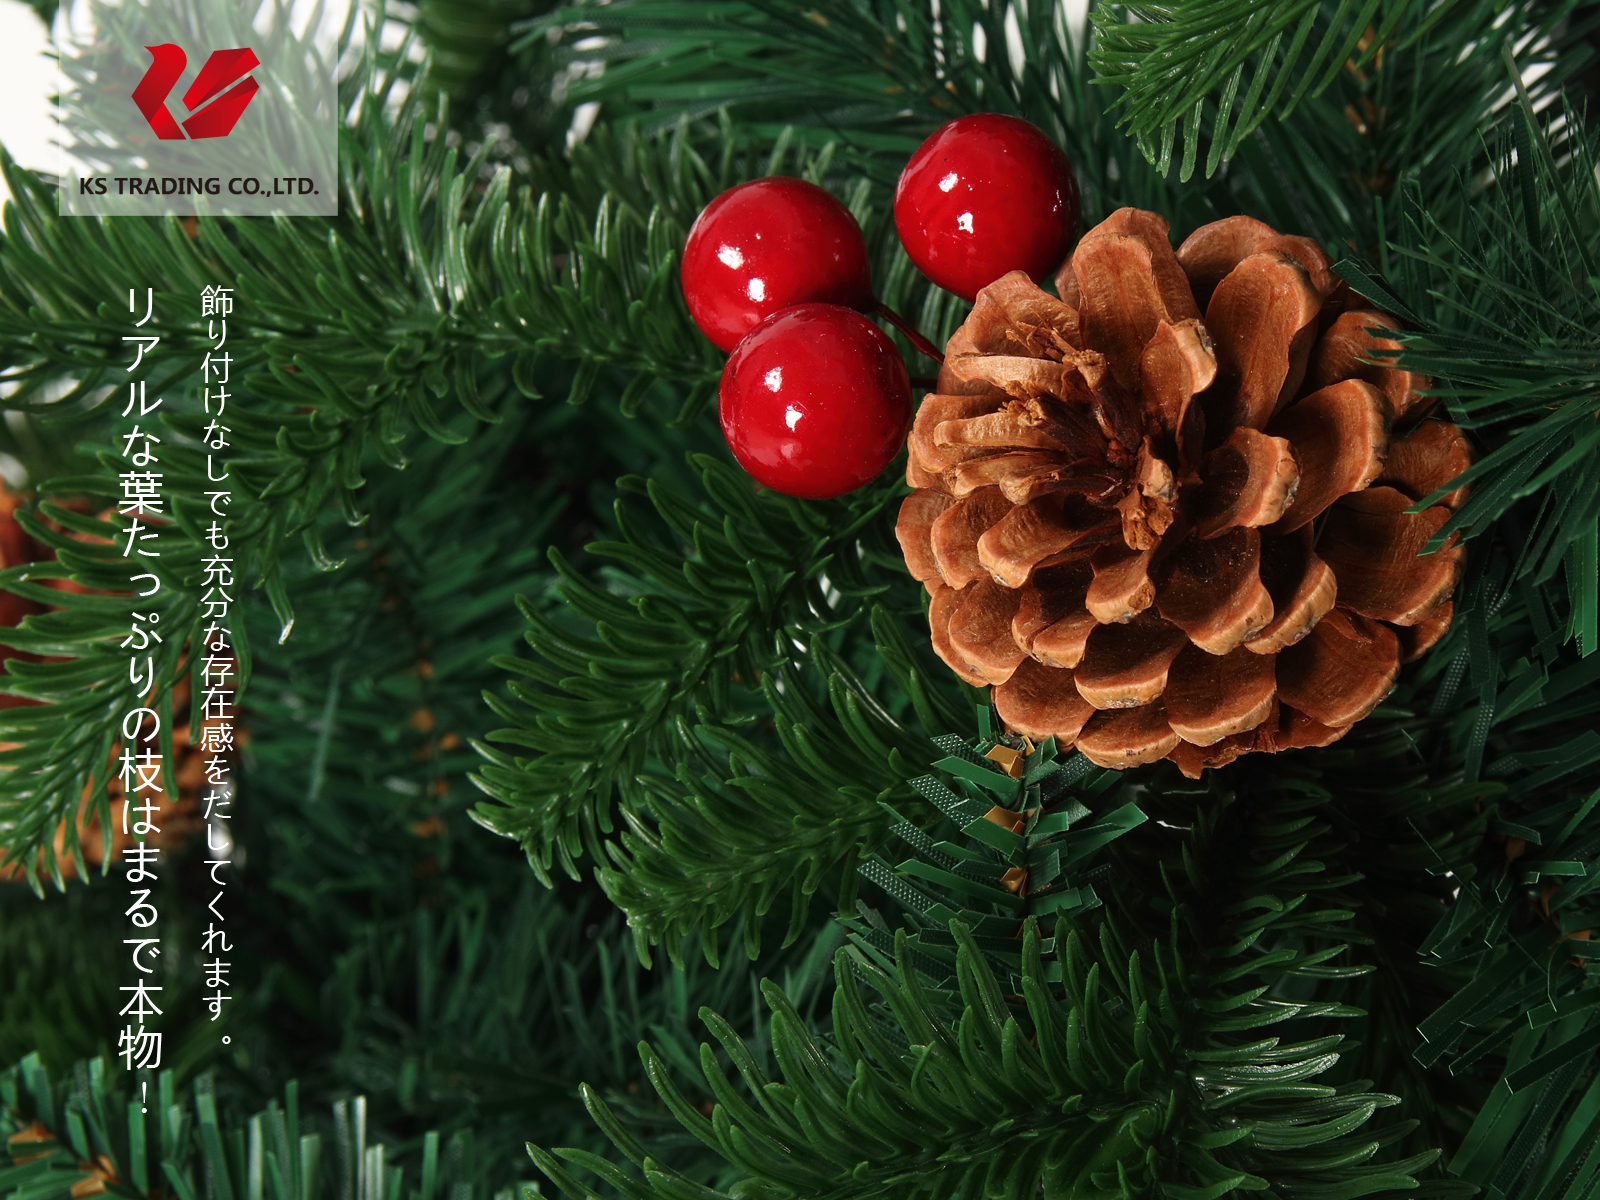 楽天市場 クリスマスツリー 枝大幅増量タイプ 松ぼっくり付き 赤い実付き 北欧風ツリー210cm Ksbm Kobe Store